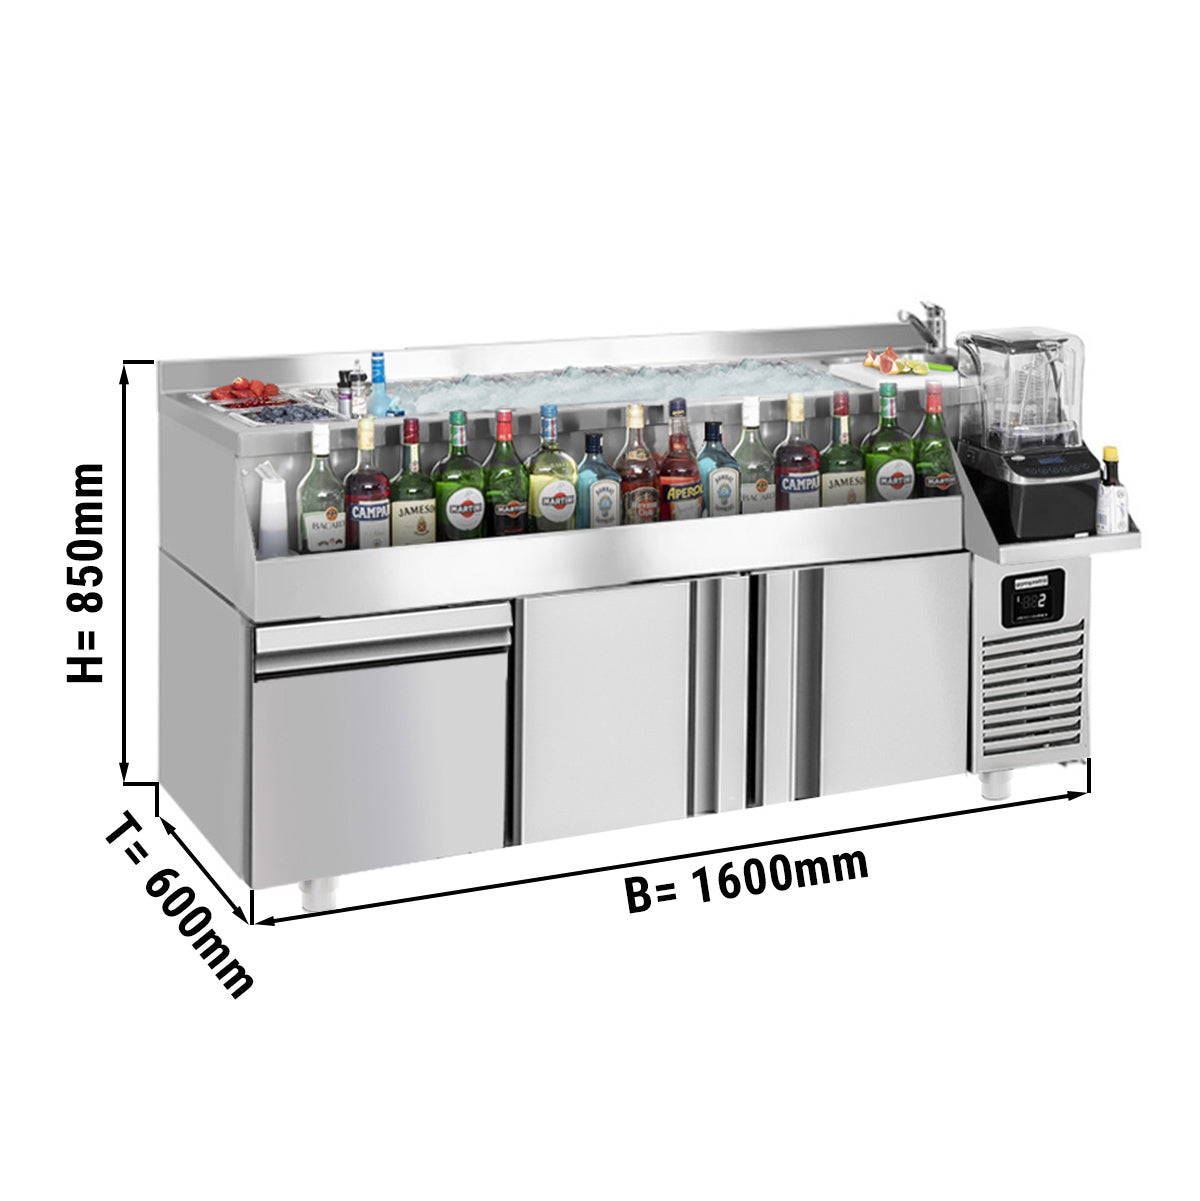 Хладилна маса за бар / напитки - 1,6 x 0,6 m - 235 литра - с 2 врати, 1 чекмедже 1/1 и рафтове